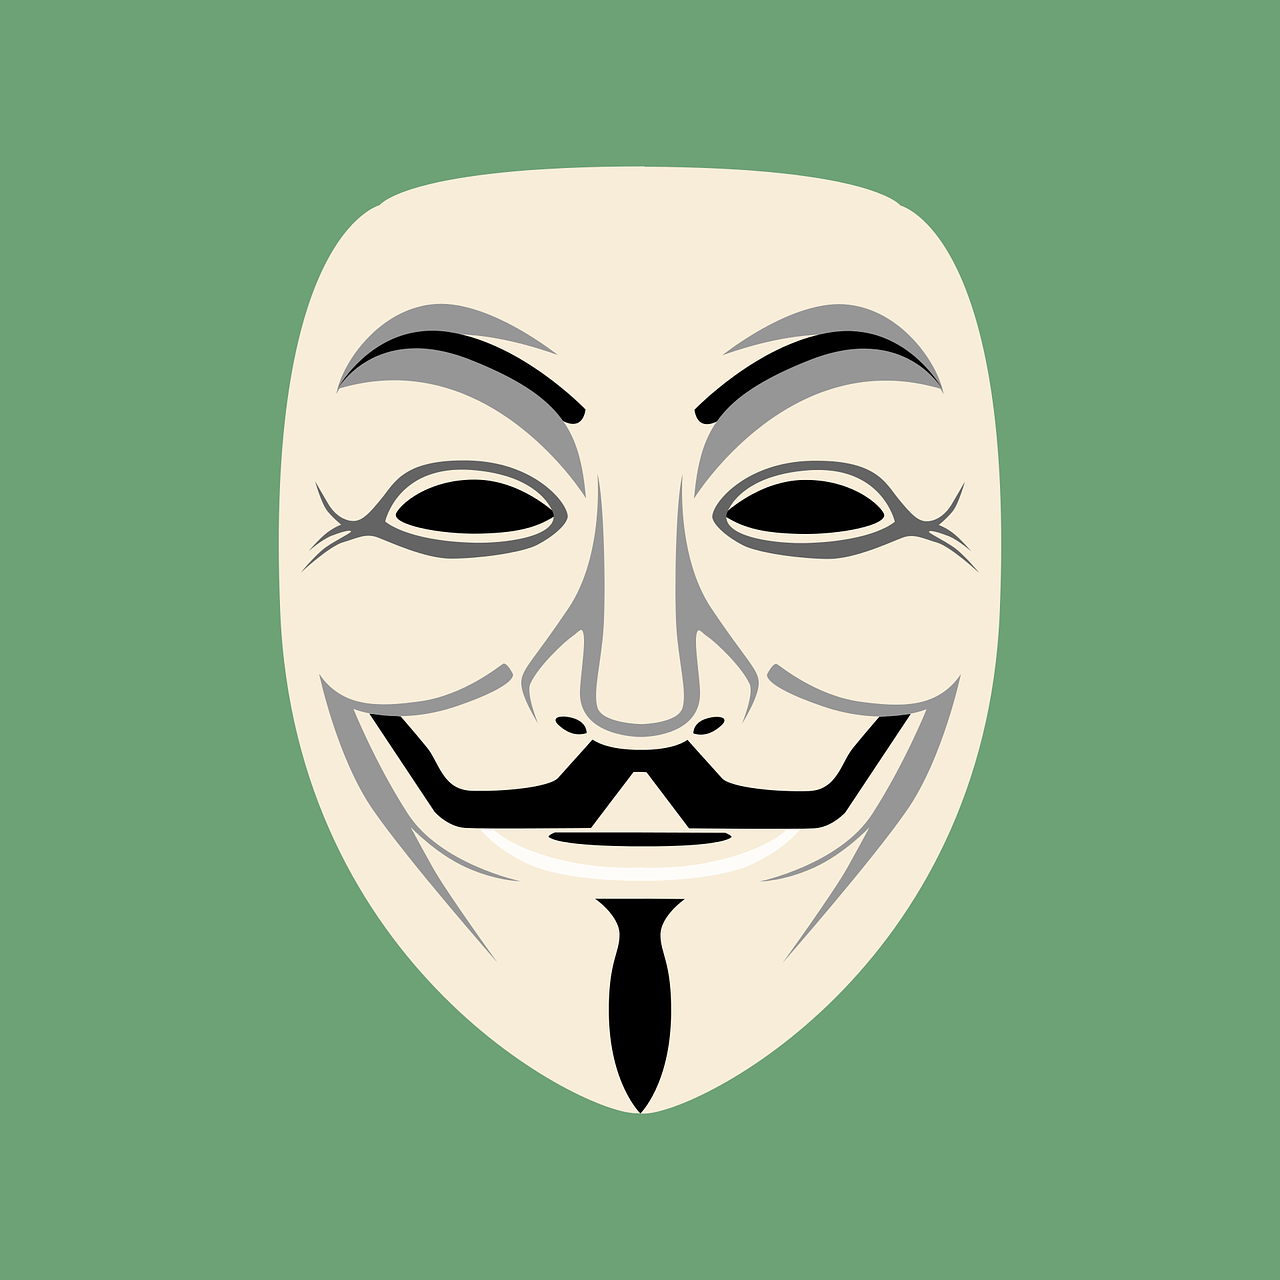 Kaukė, Anoniminis, Veidas, Skydas, Internetas, Įsipareigojimas, Laisvė, Demonstracija, Sukilimas, Apsirengęs